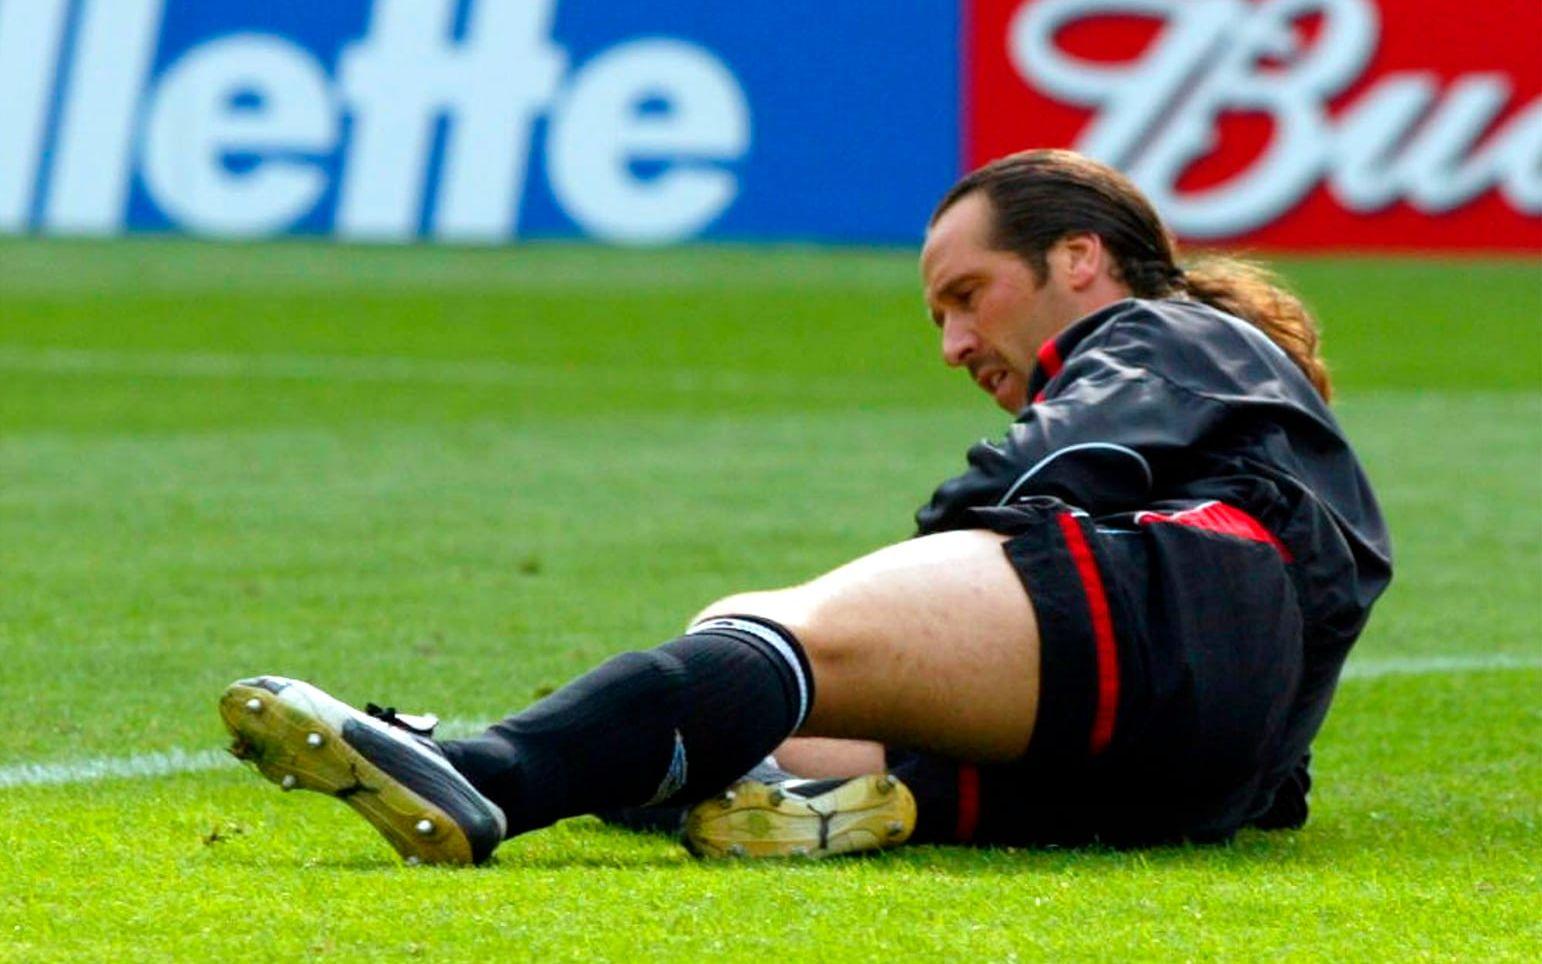 Arsenallegendaren David Seaman, engelsk landslagsmålvakt 1988-2002, skadade ryggen (sträckning) när han försökte nå fjärrkontrollen till tv:n. Foto: TT